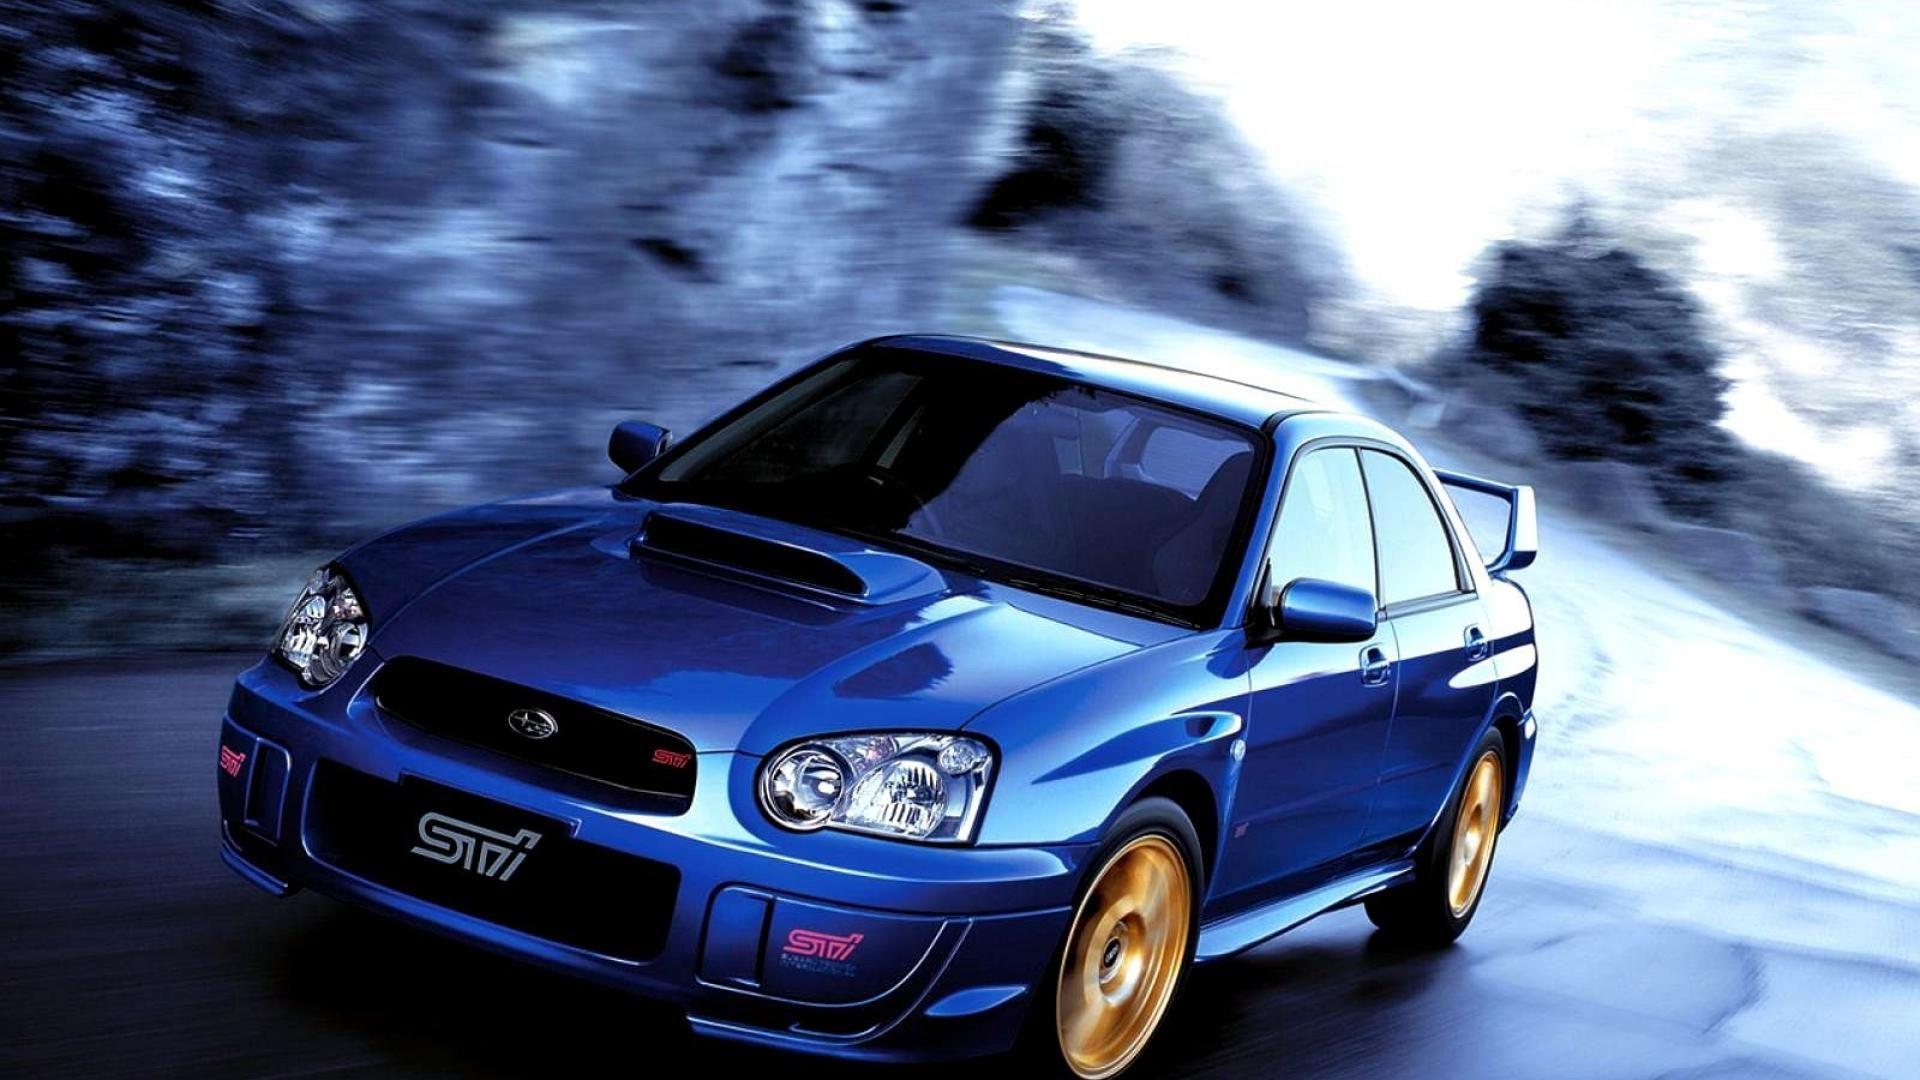 Subaru Impreza Car Wallpaper 1080p. Wrx, Subaru cars, Subaru impreza